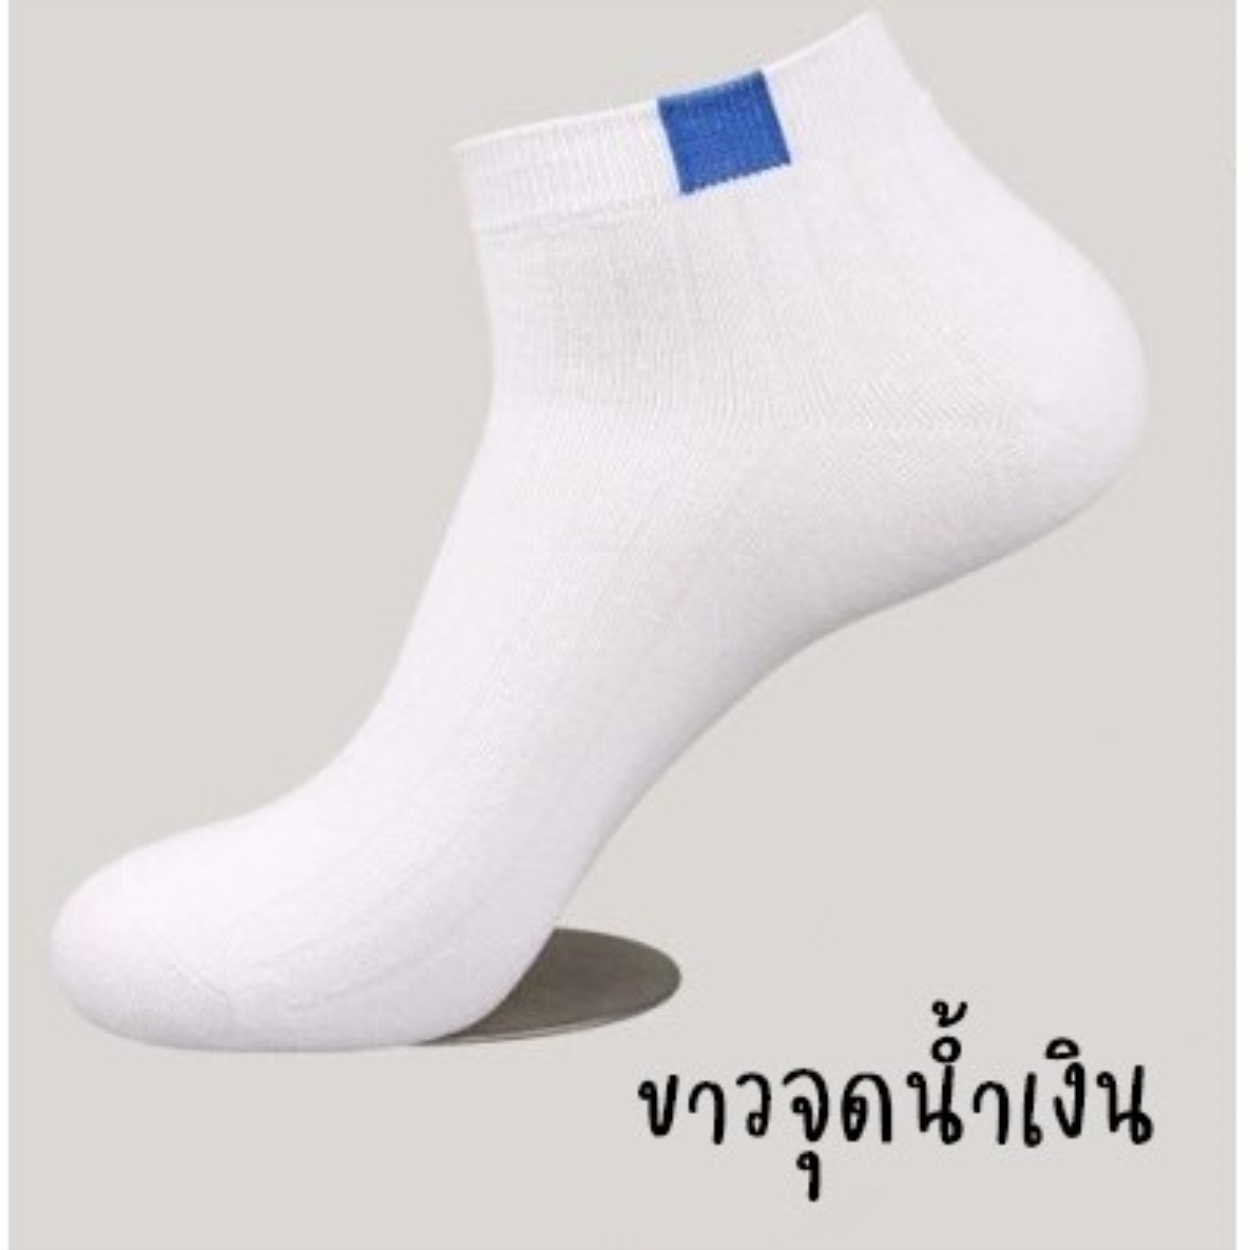 ?ถุงเท้าสีพื้น ขาว/ดำ/เทา ข้อสั้น 1 คู่ Socks เนื้อผ้านุ่มสบาย? ระบายอากาศ ไม่อับชื้น